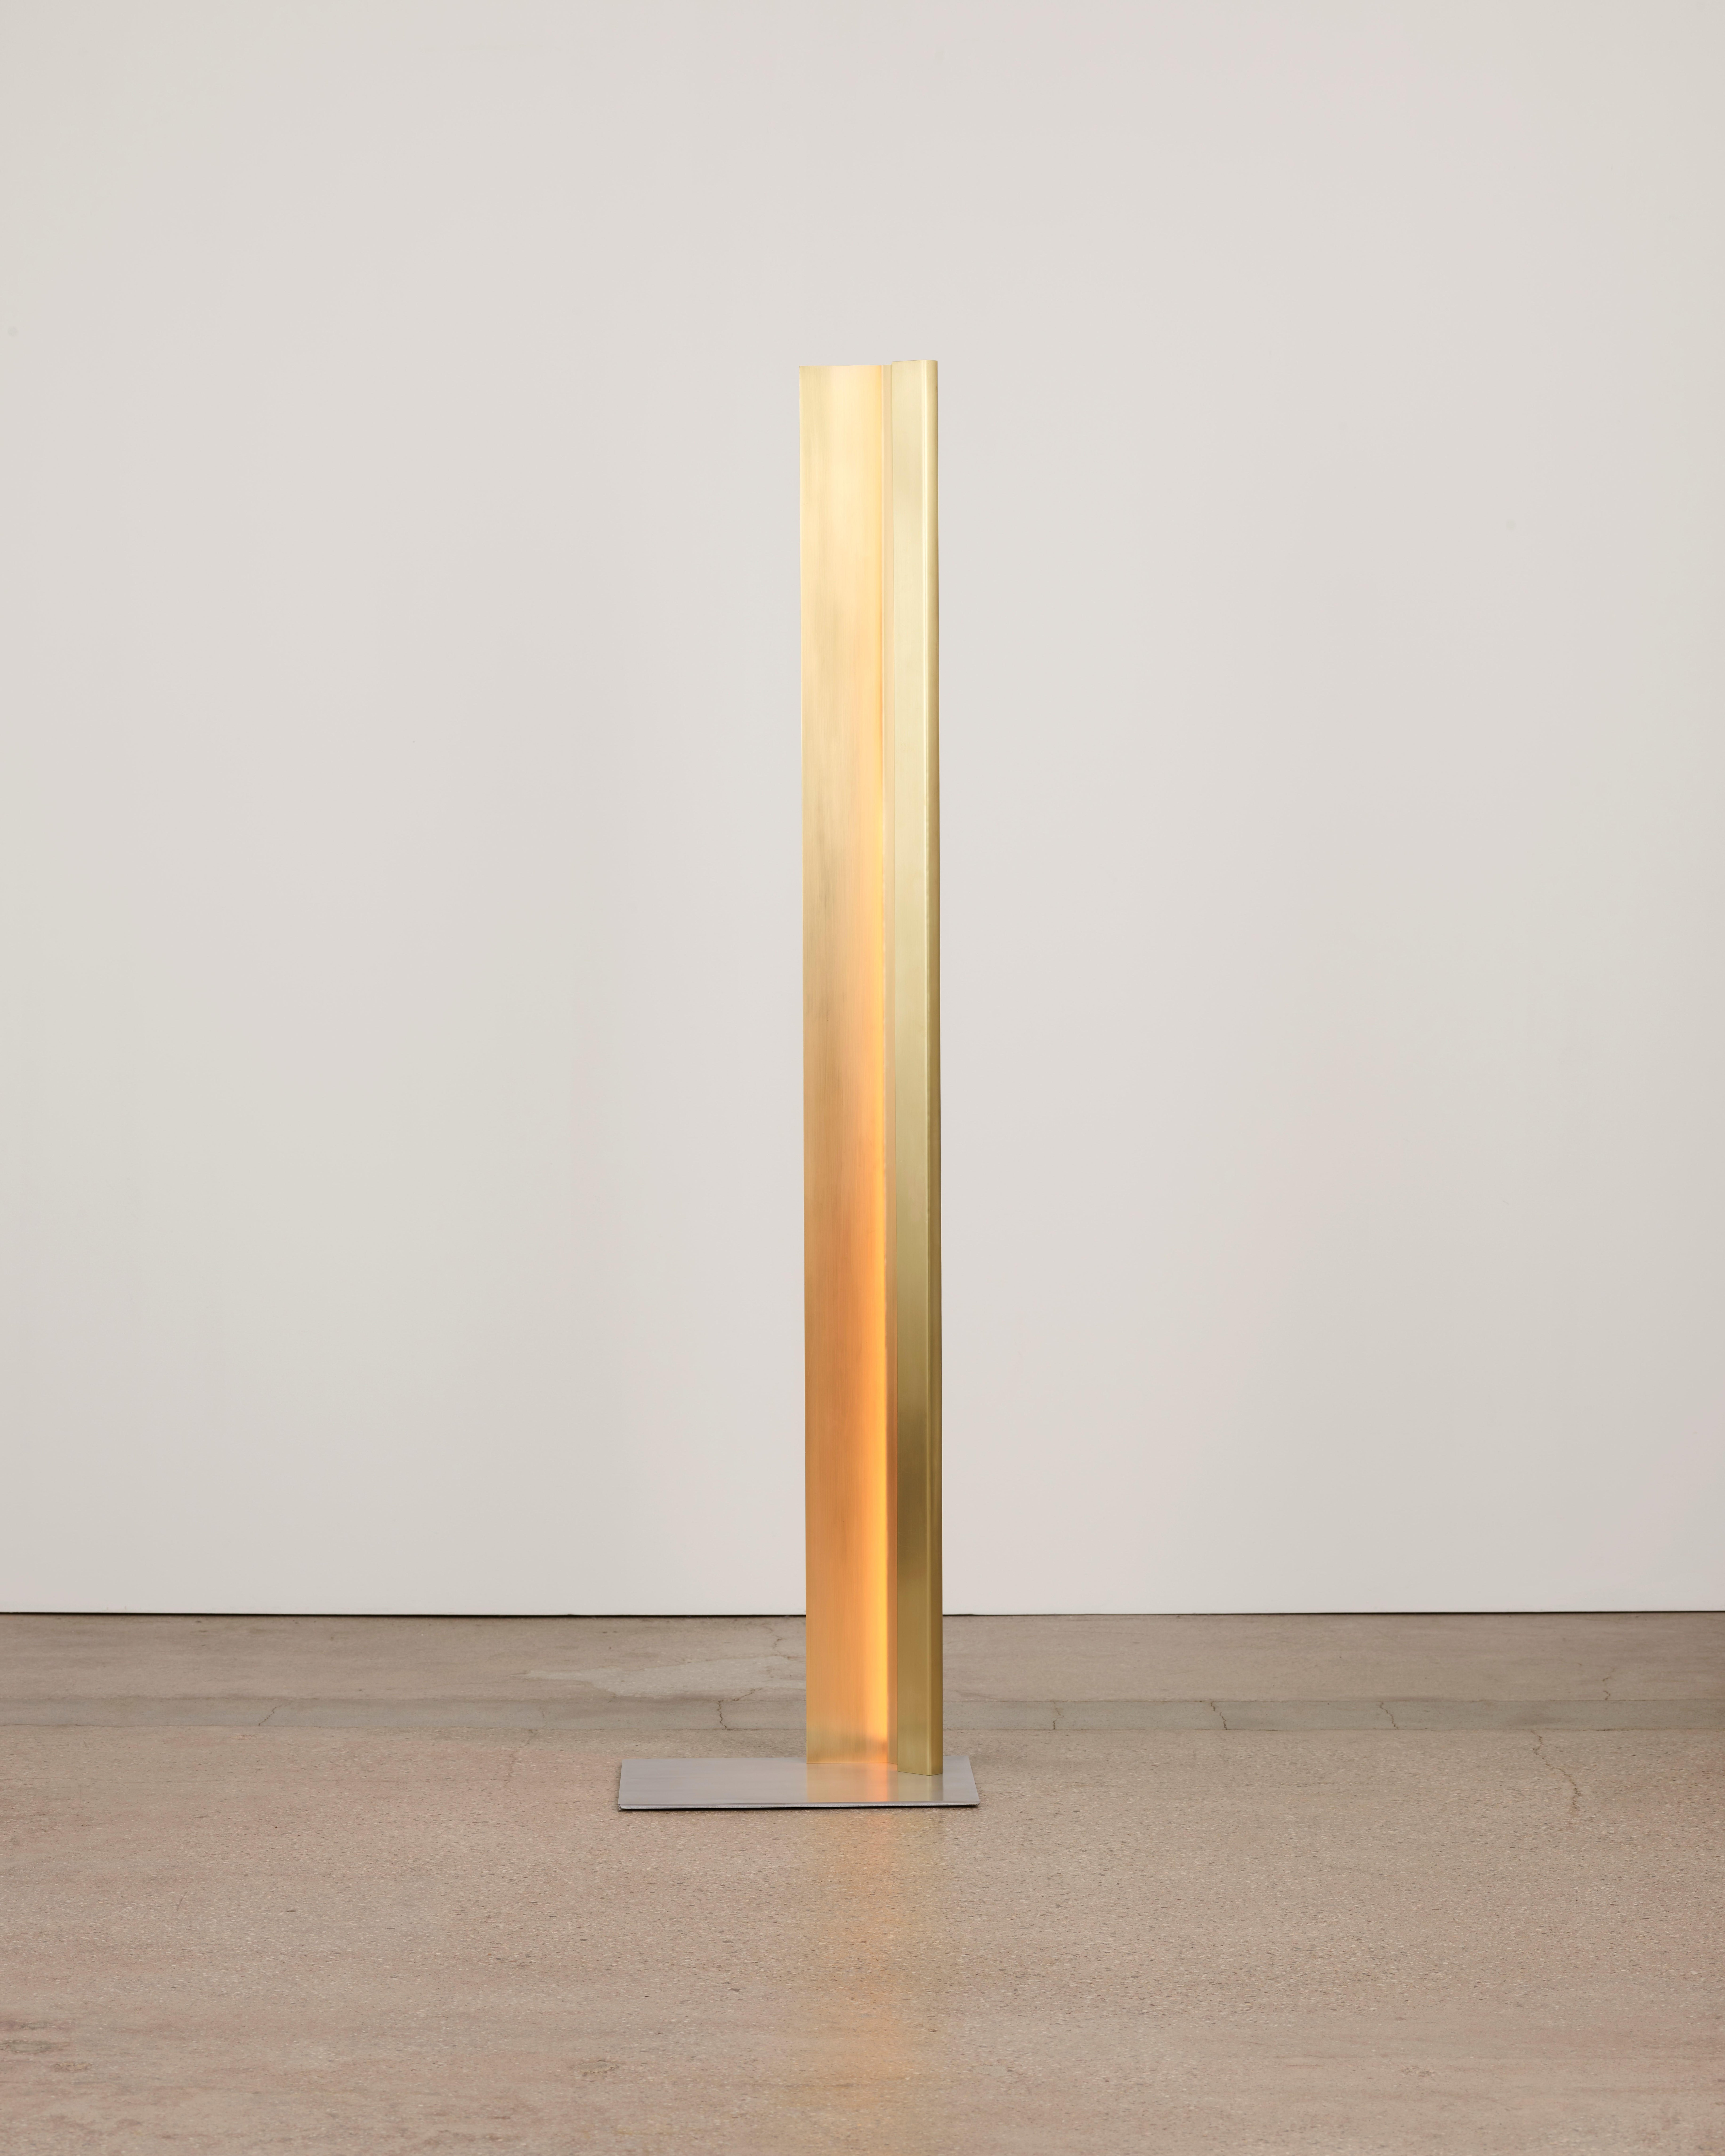 Mano standing lamp by Umberto Bellardi Ricci.
Dimensions: D 18